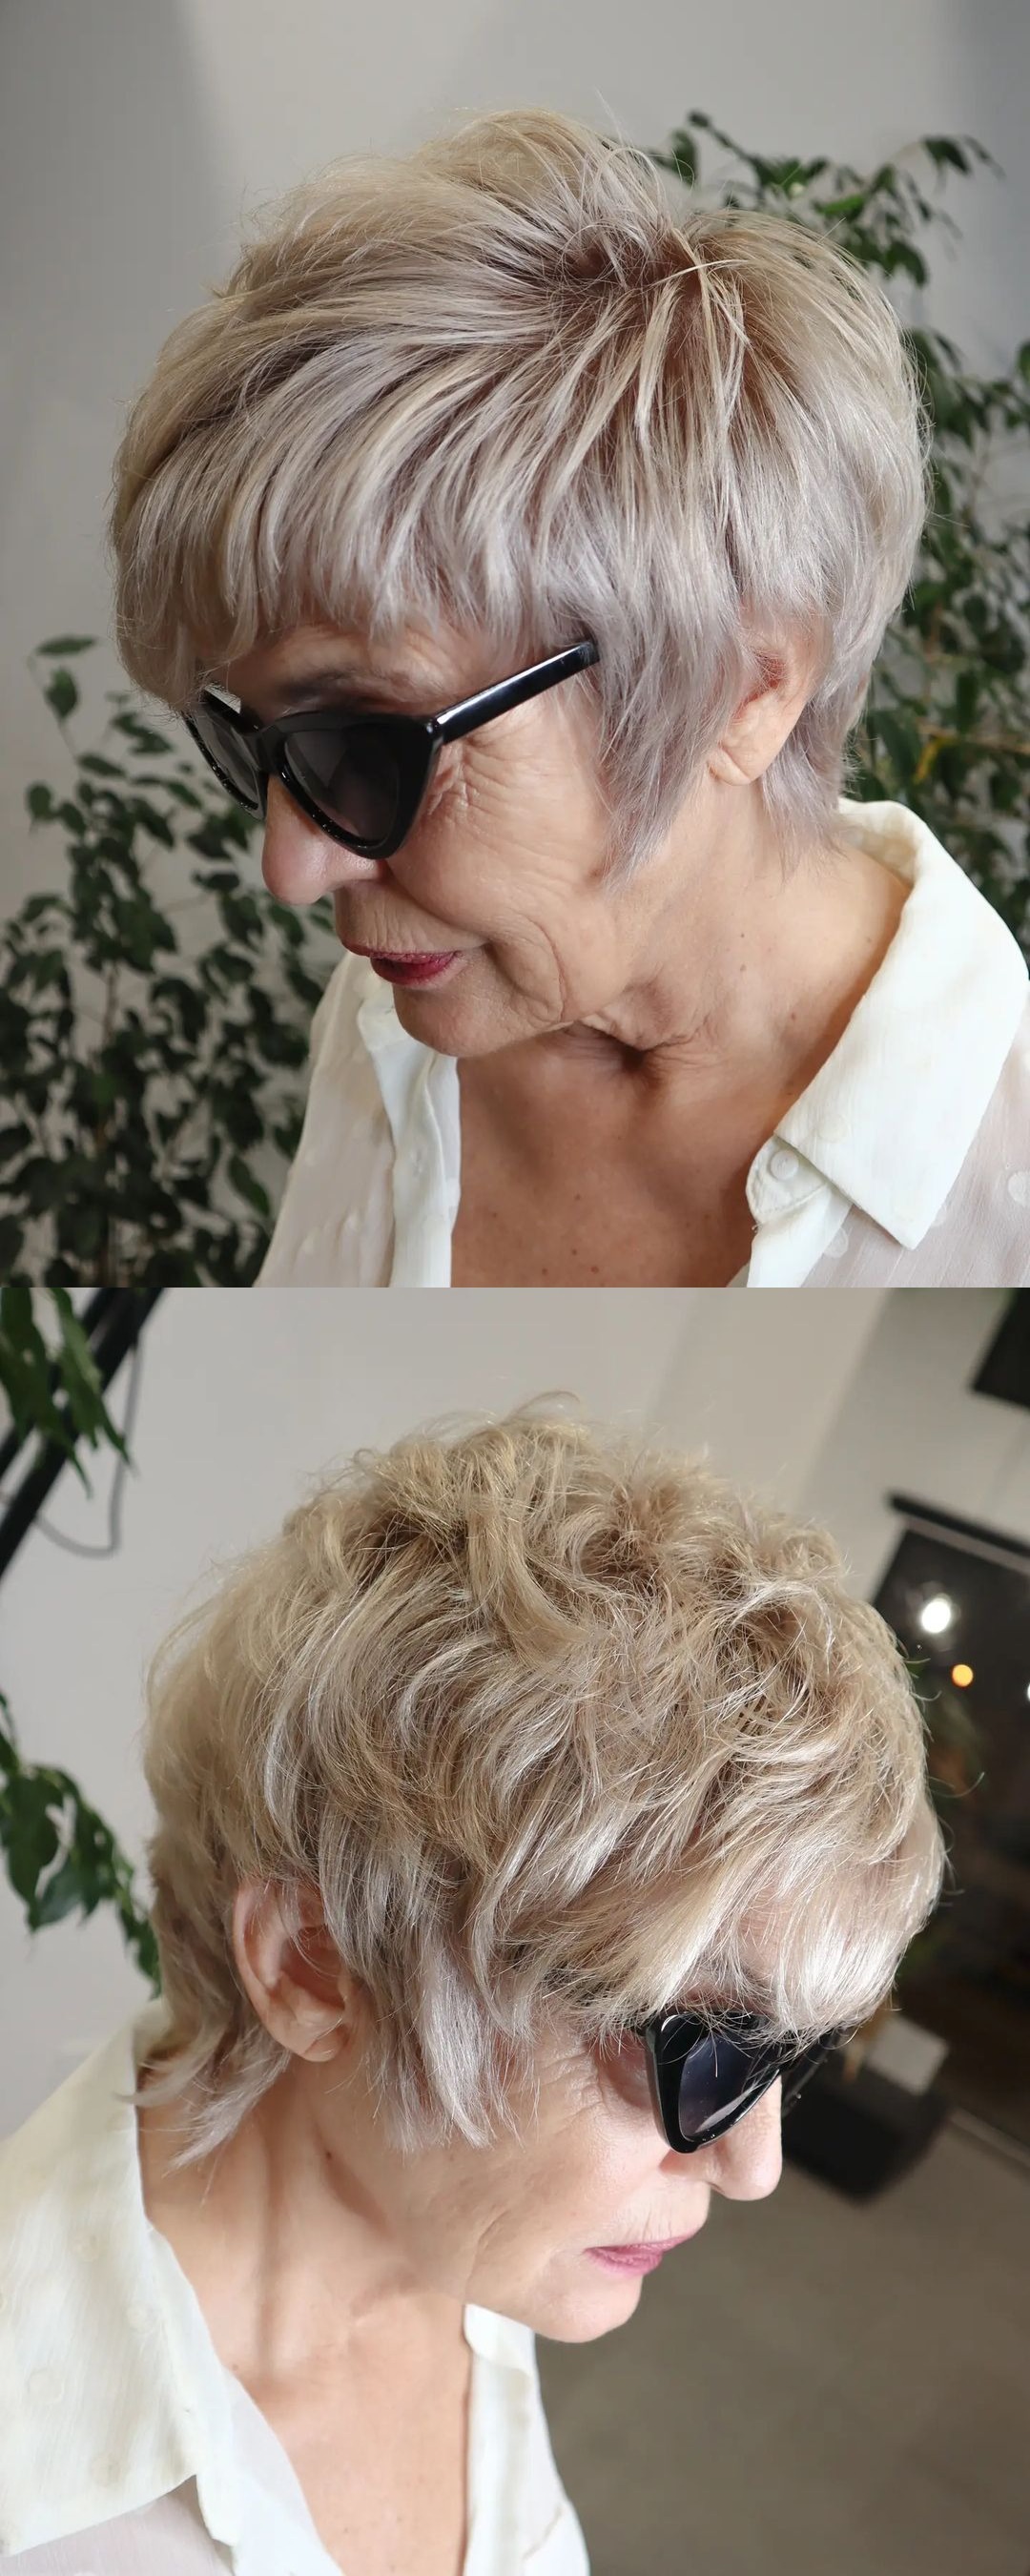 Sassy Pixie Mullet für dickes Haar bei einer Frau in den Sechzigern